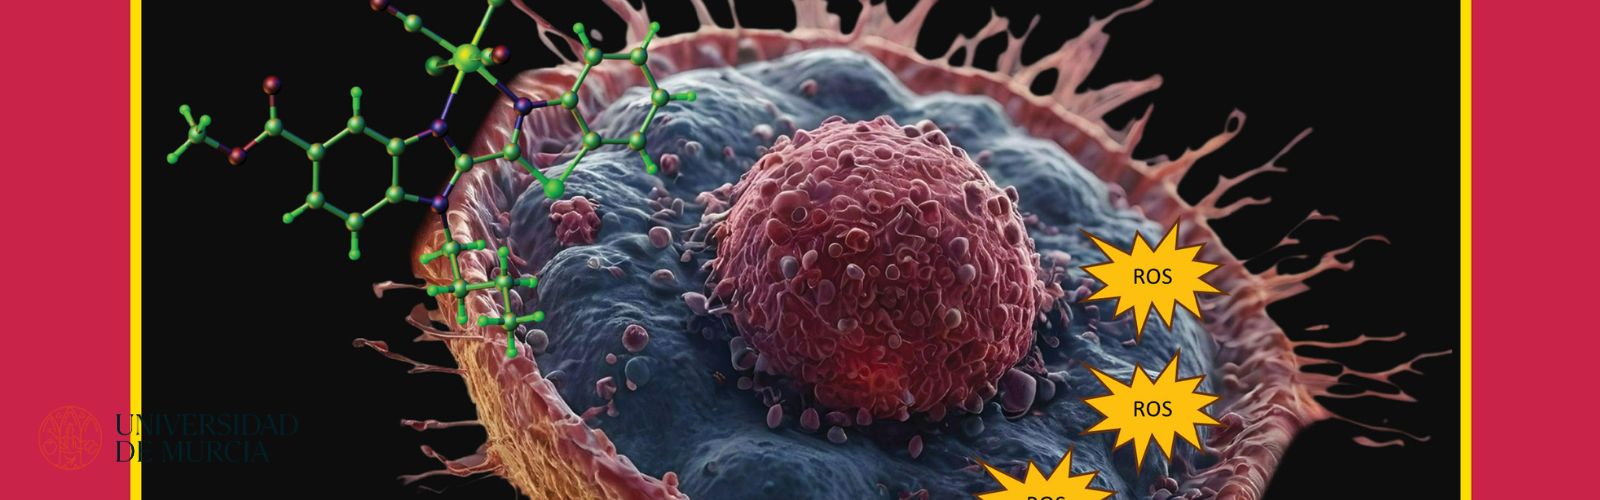 Nota de prensa - Un equipo multidisciplinar de la UMU logra la portada de Medicinal Chemistry con el descubrimiento de nuevos agentes que matan las células tumorales